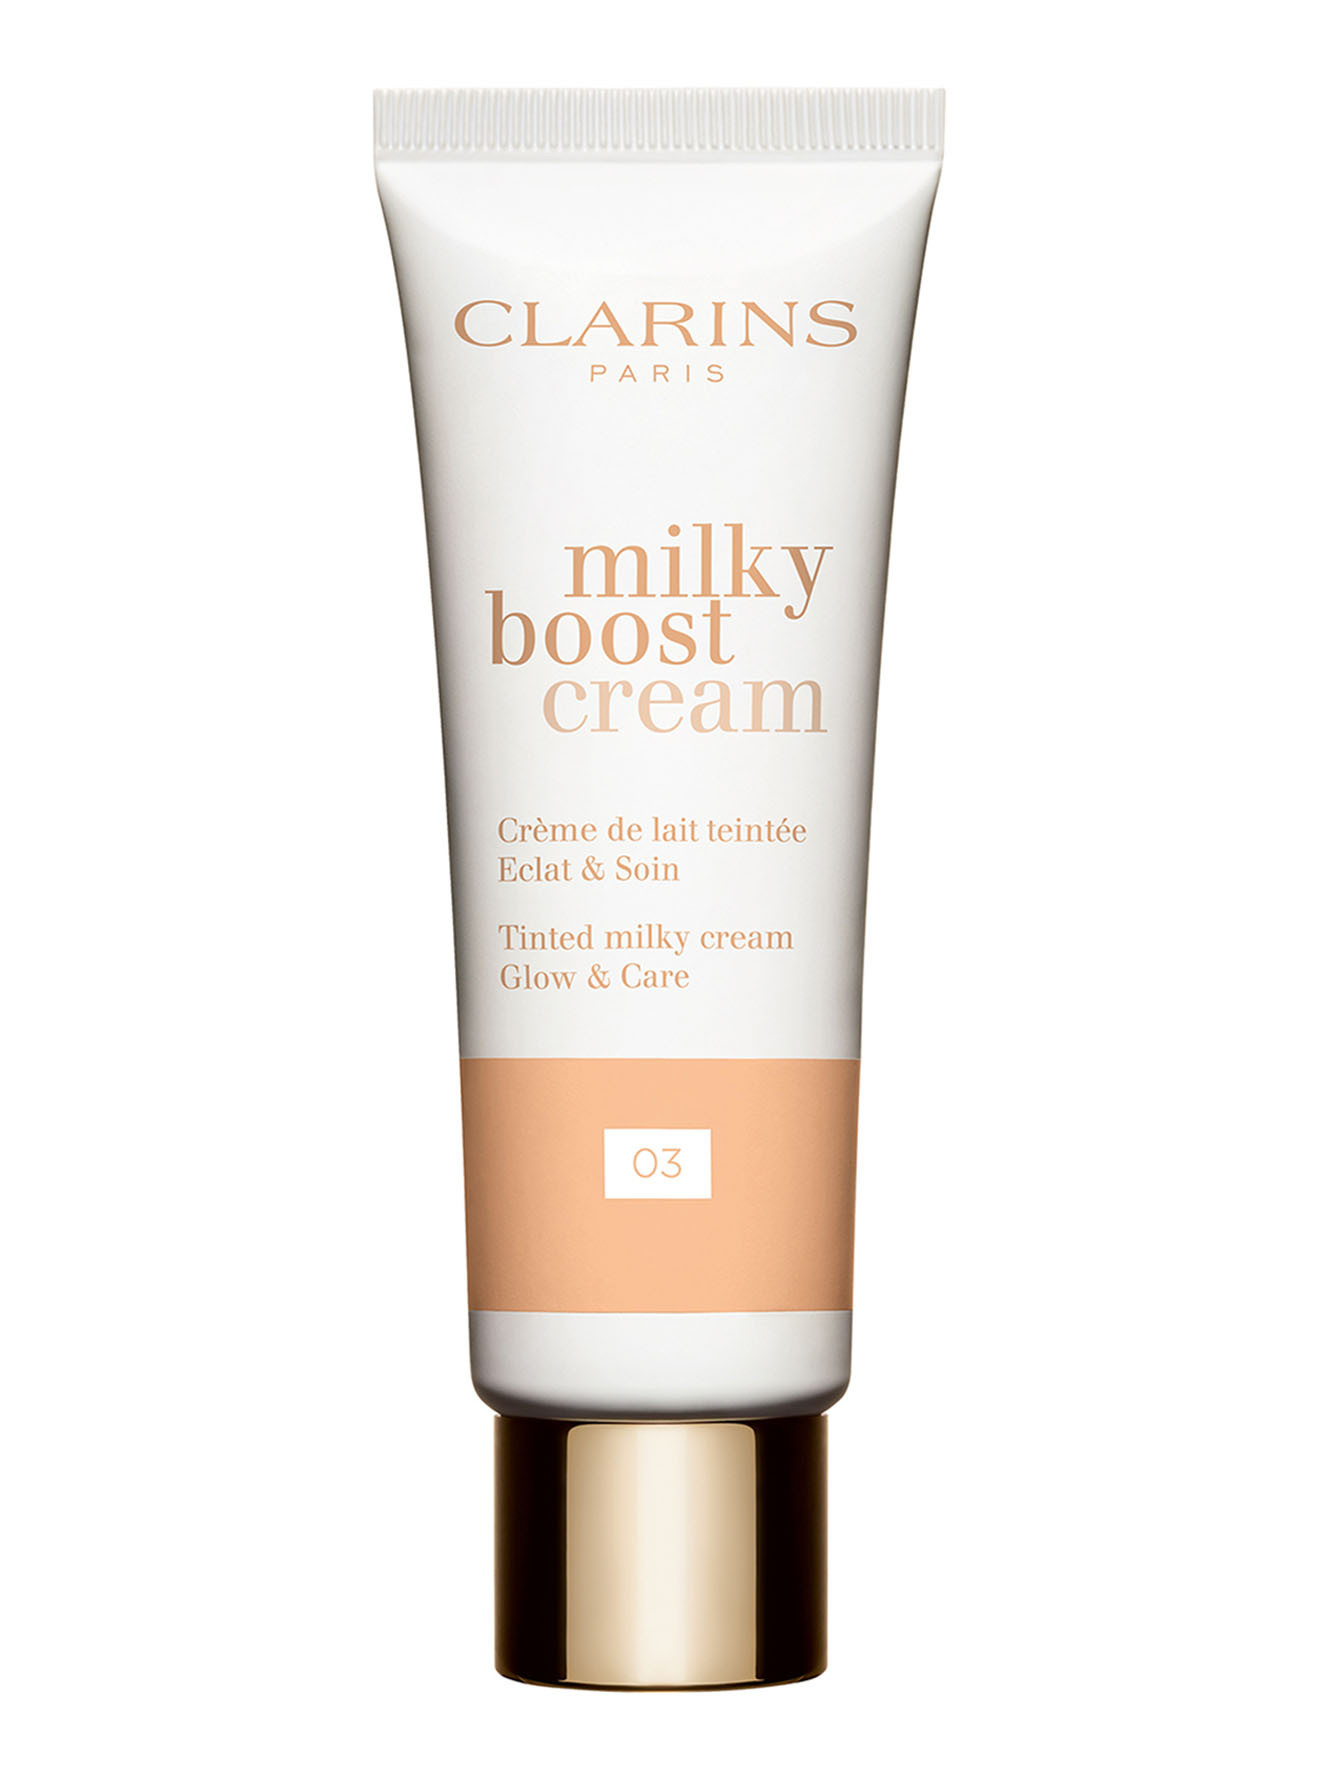 Тональный крем с эффектом сияния Milky Boost Cream, 03, 45 мл - Общий вид